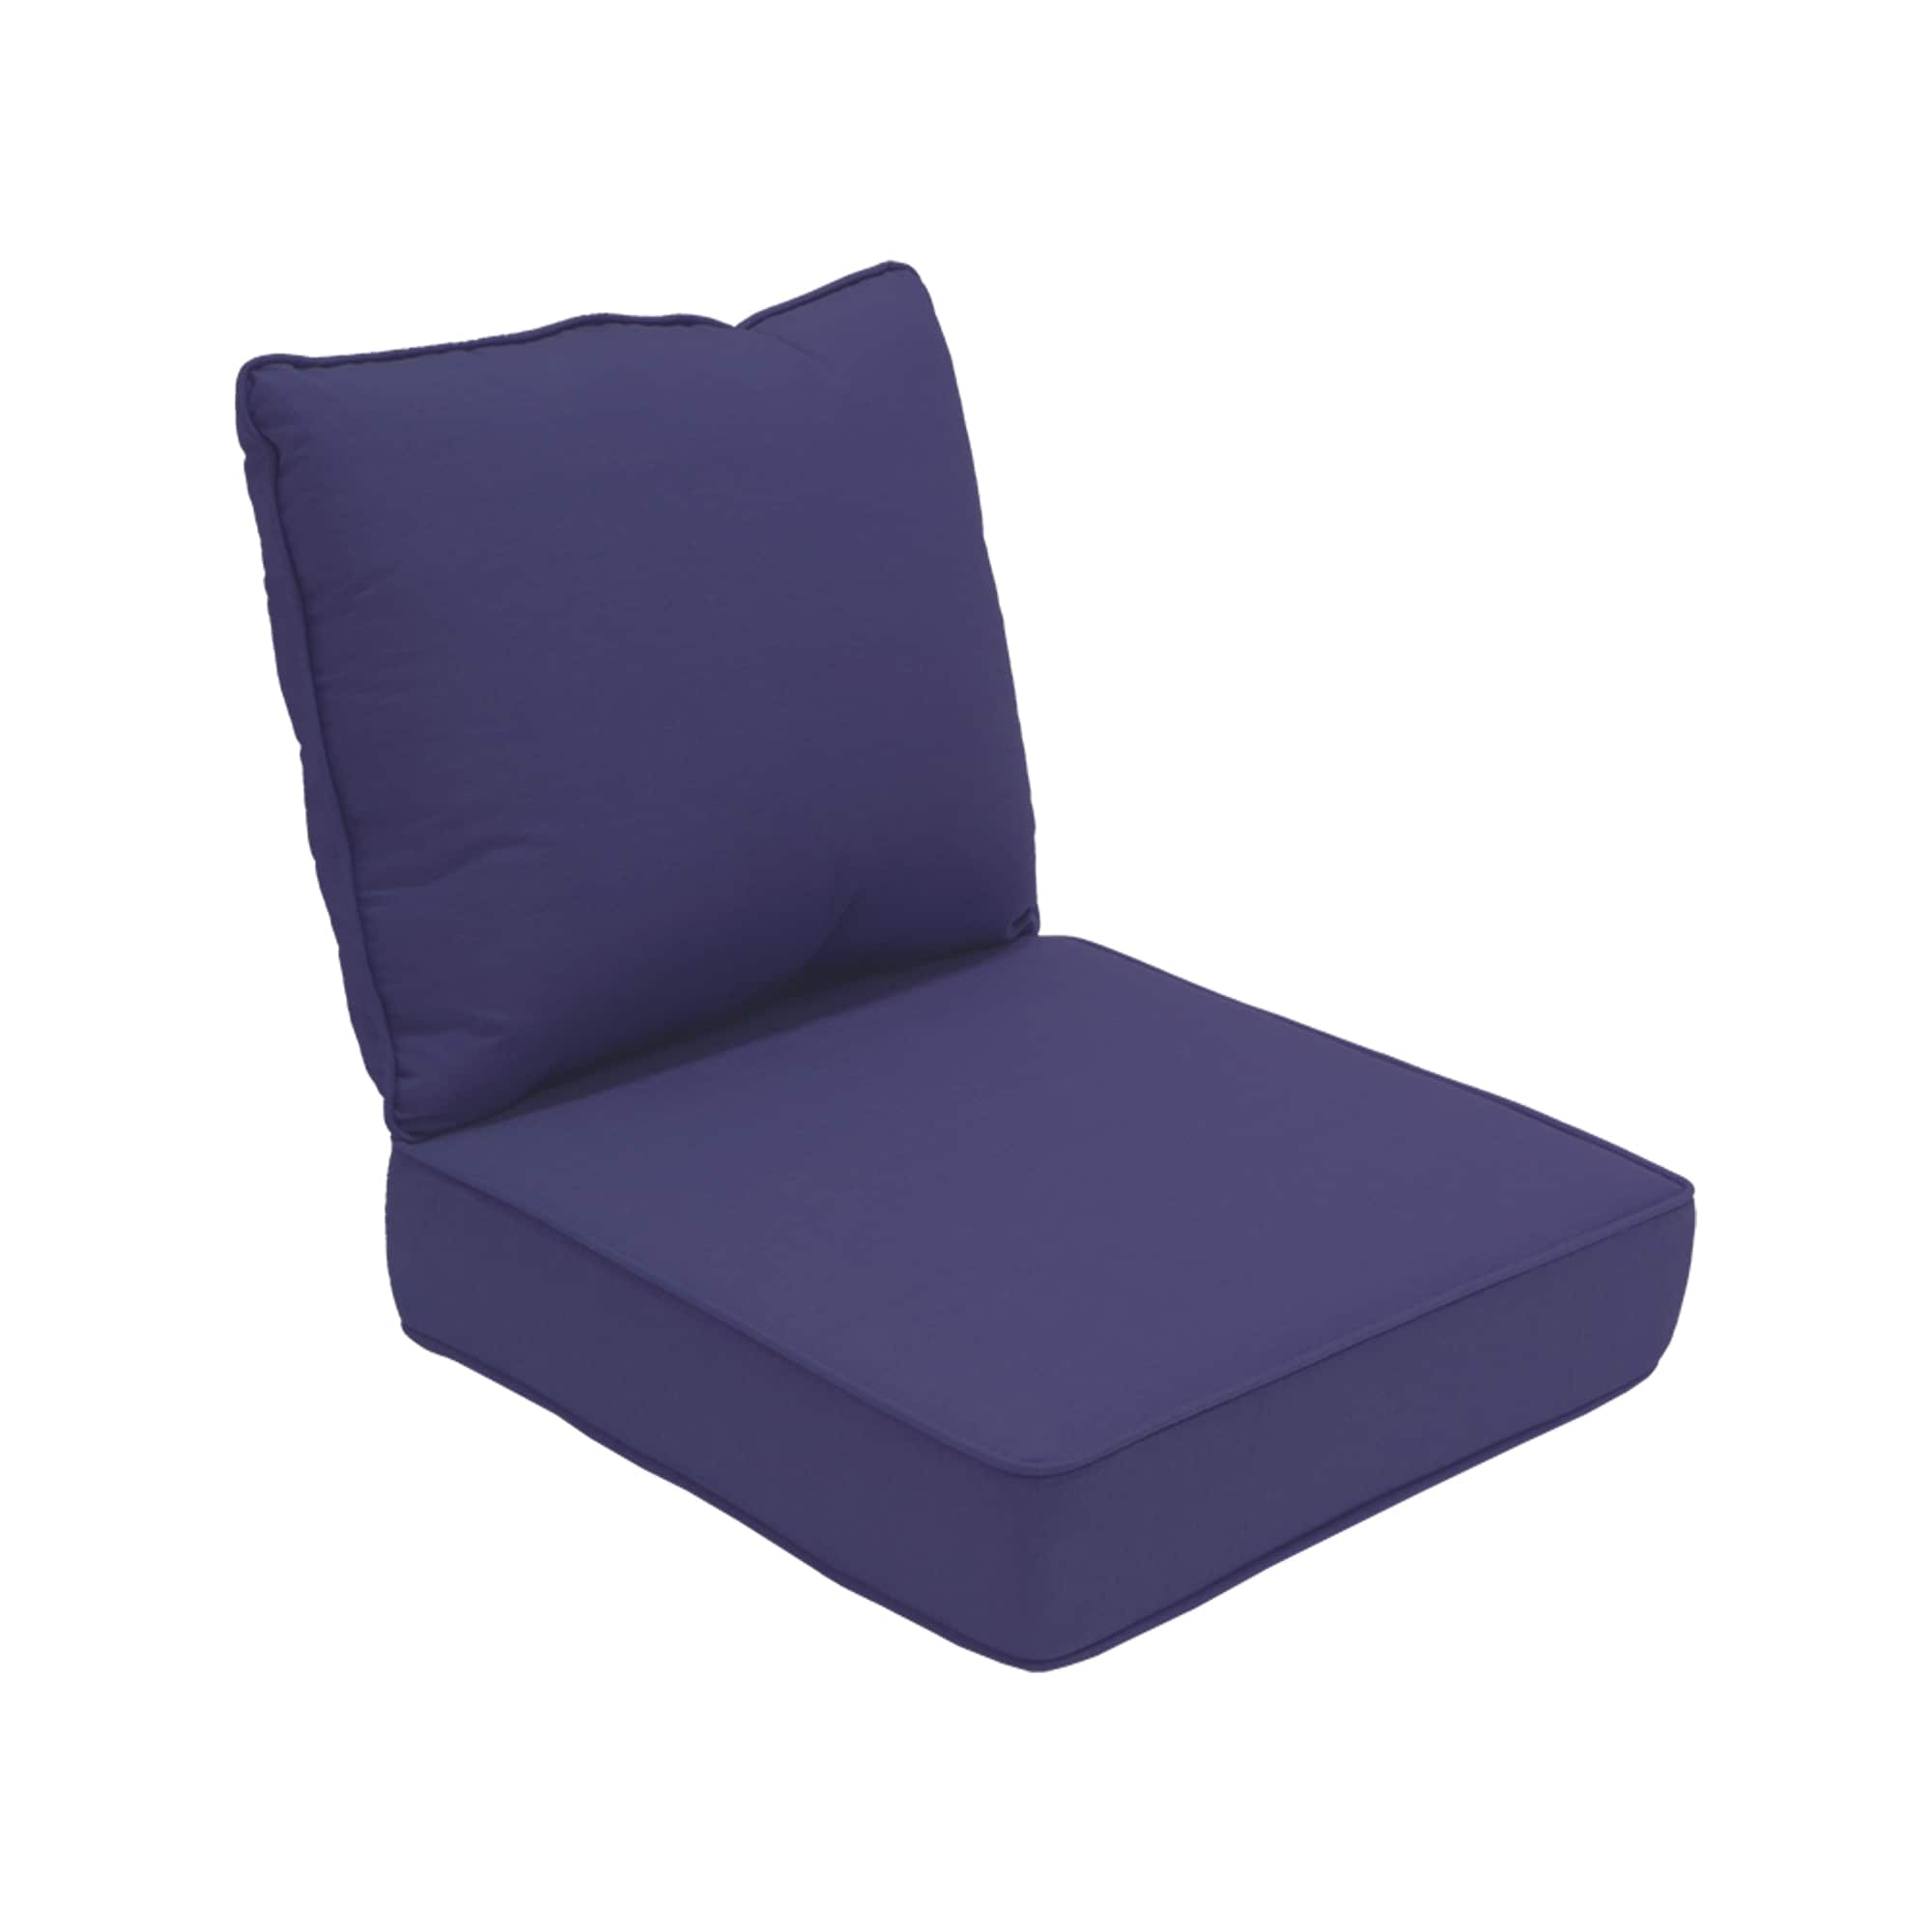 Inflatable Cushion, Seat Pillow, Butt Cushion, Chair Cushions